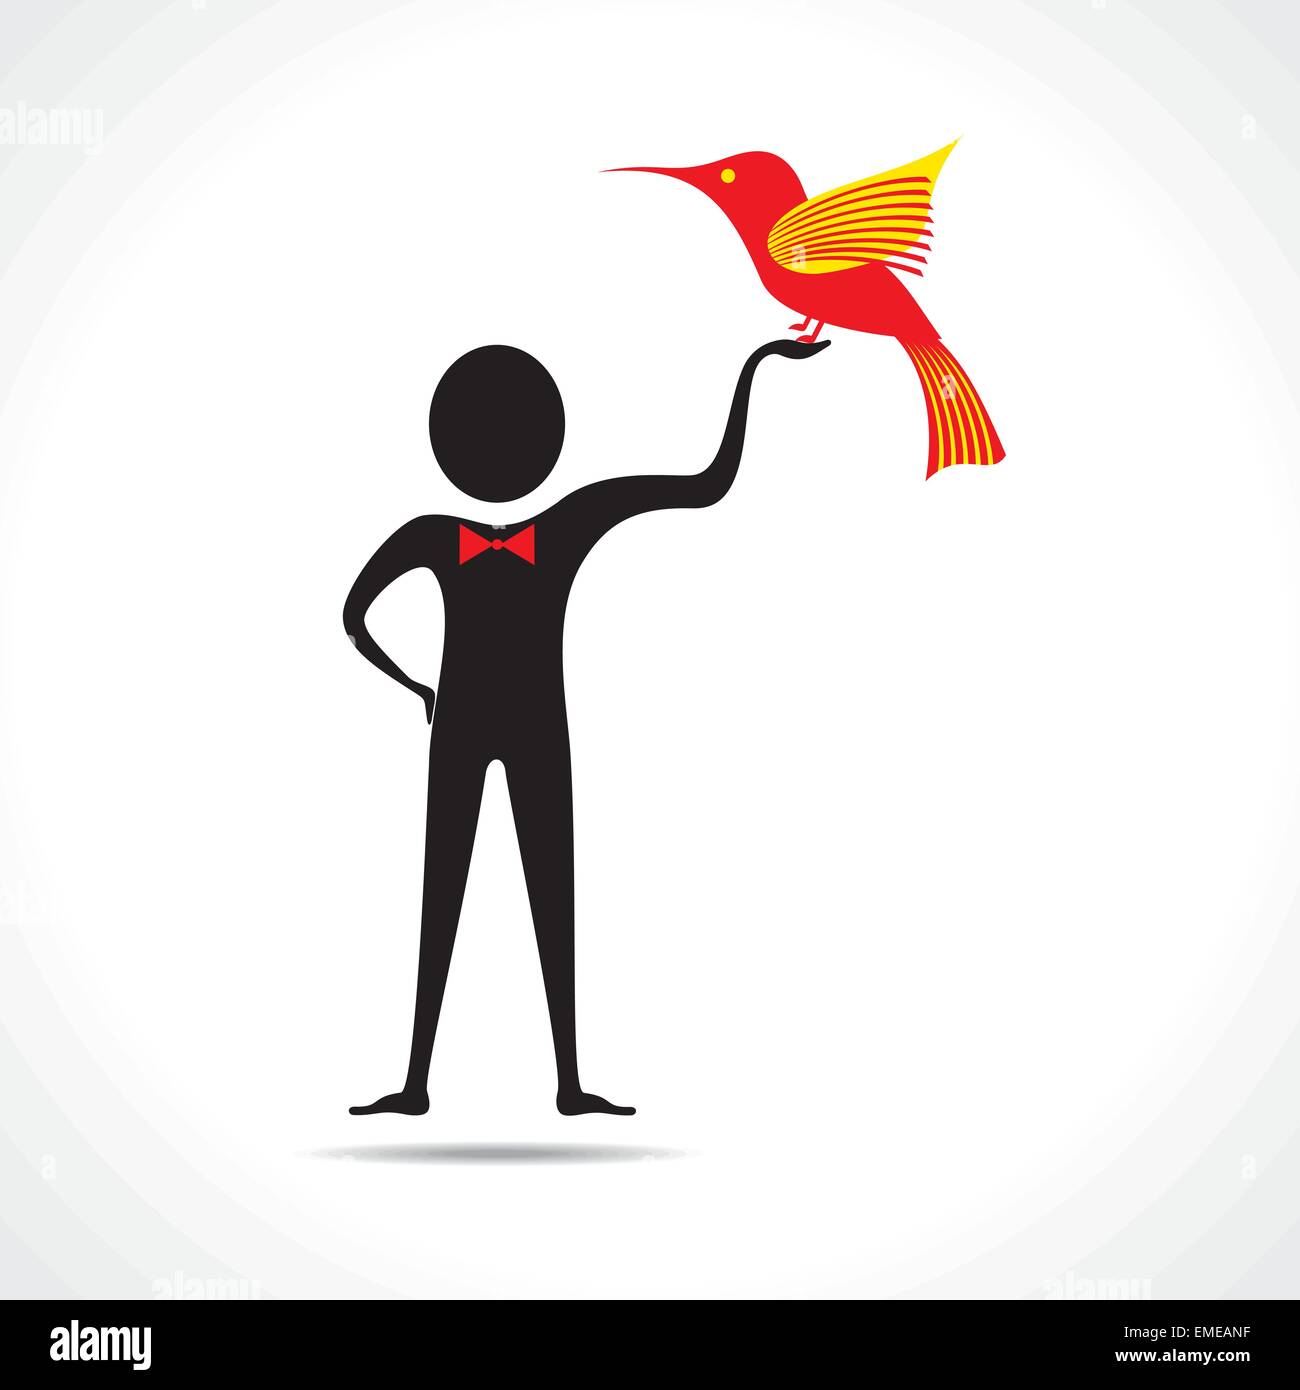 Man holding a bird icon vector Stock Vector